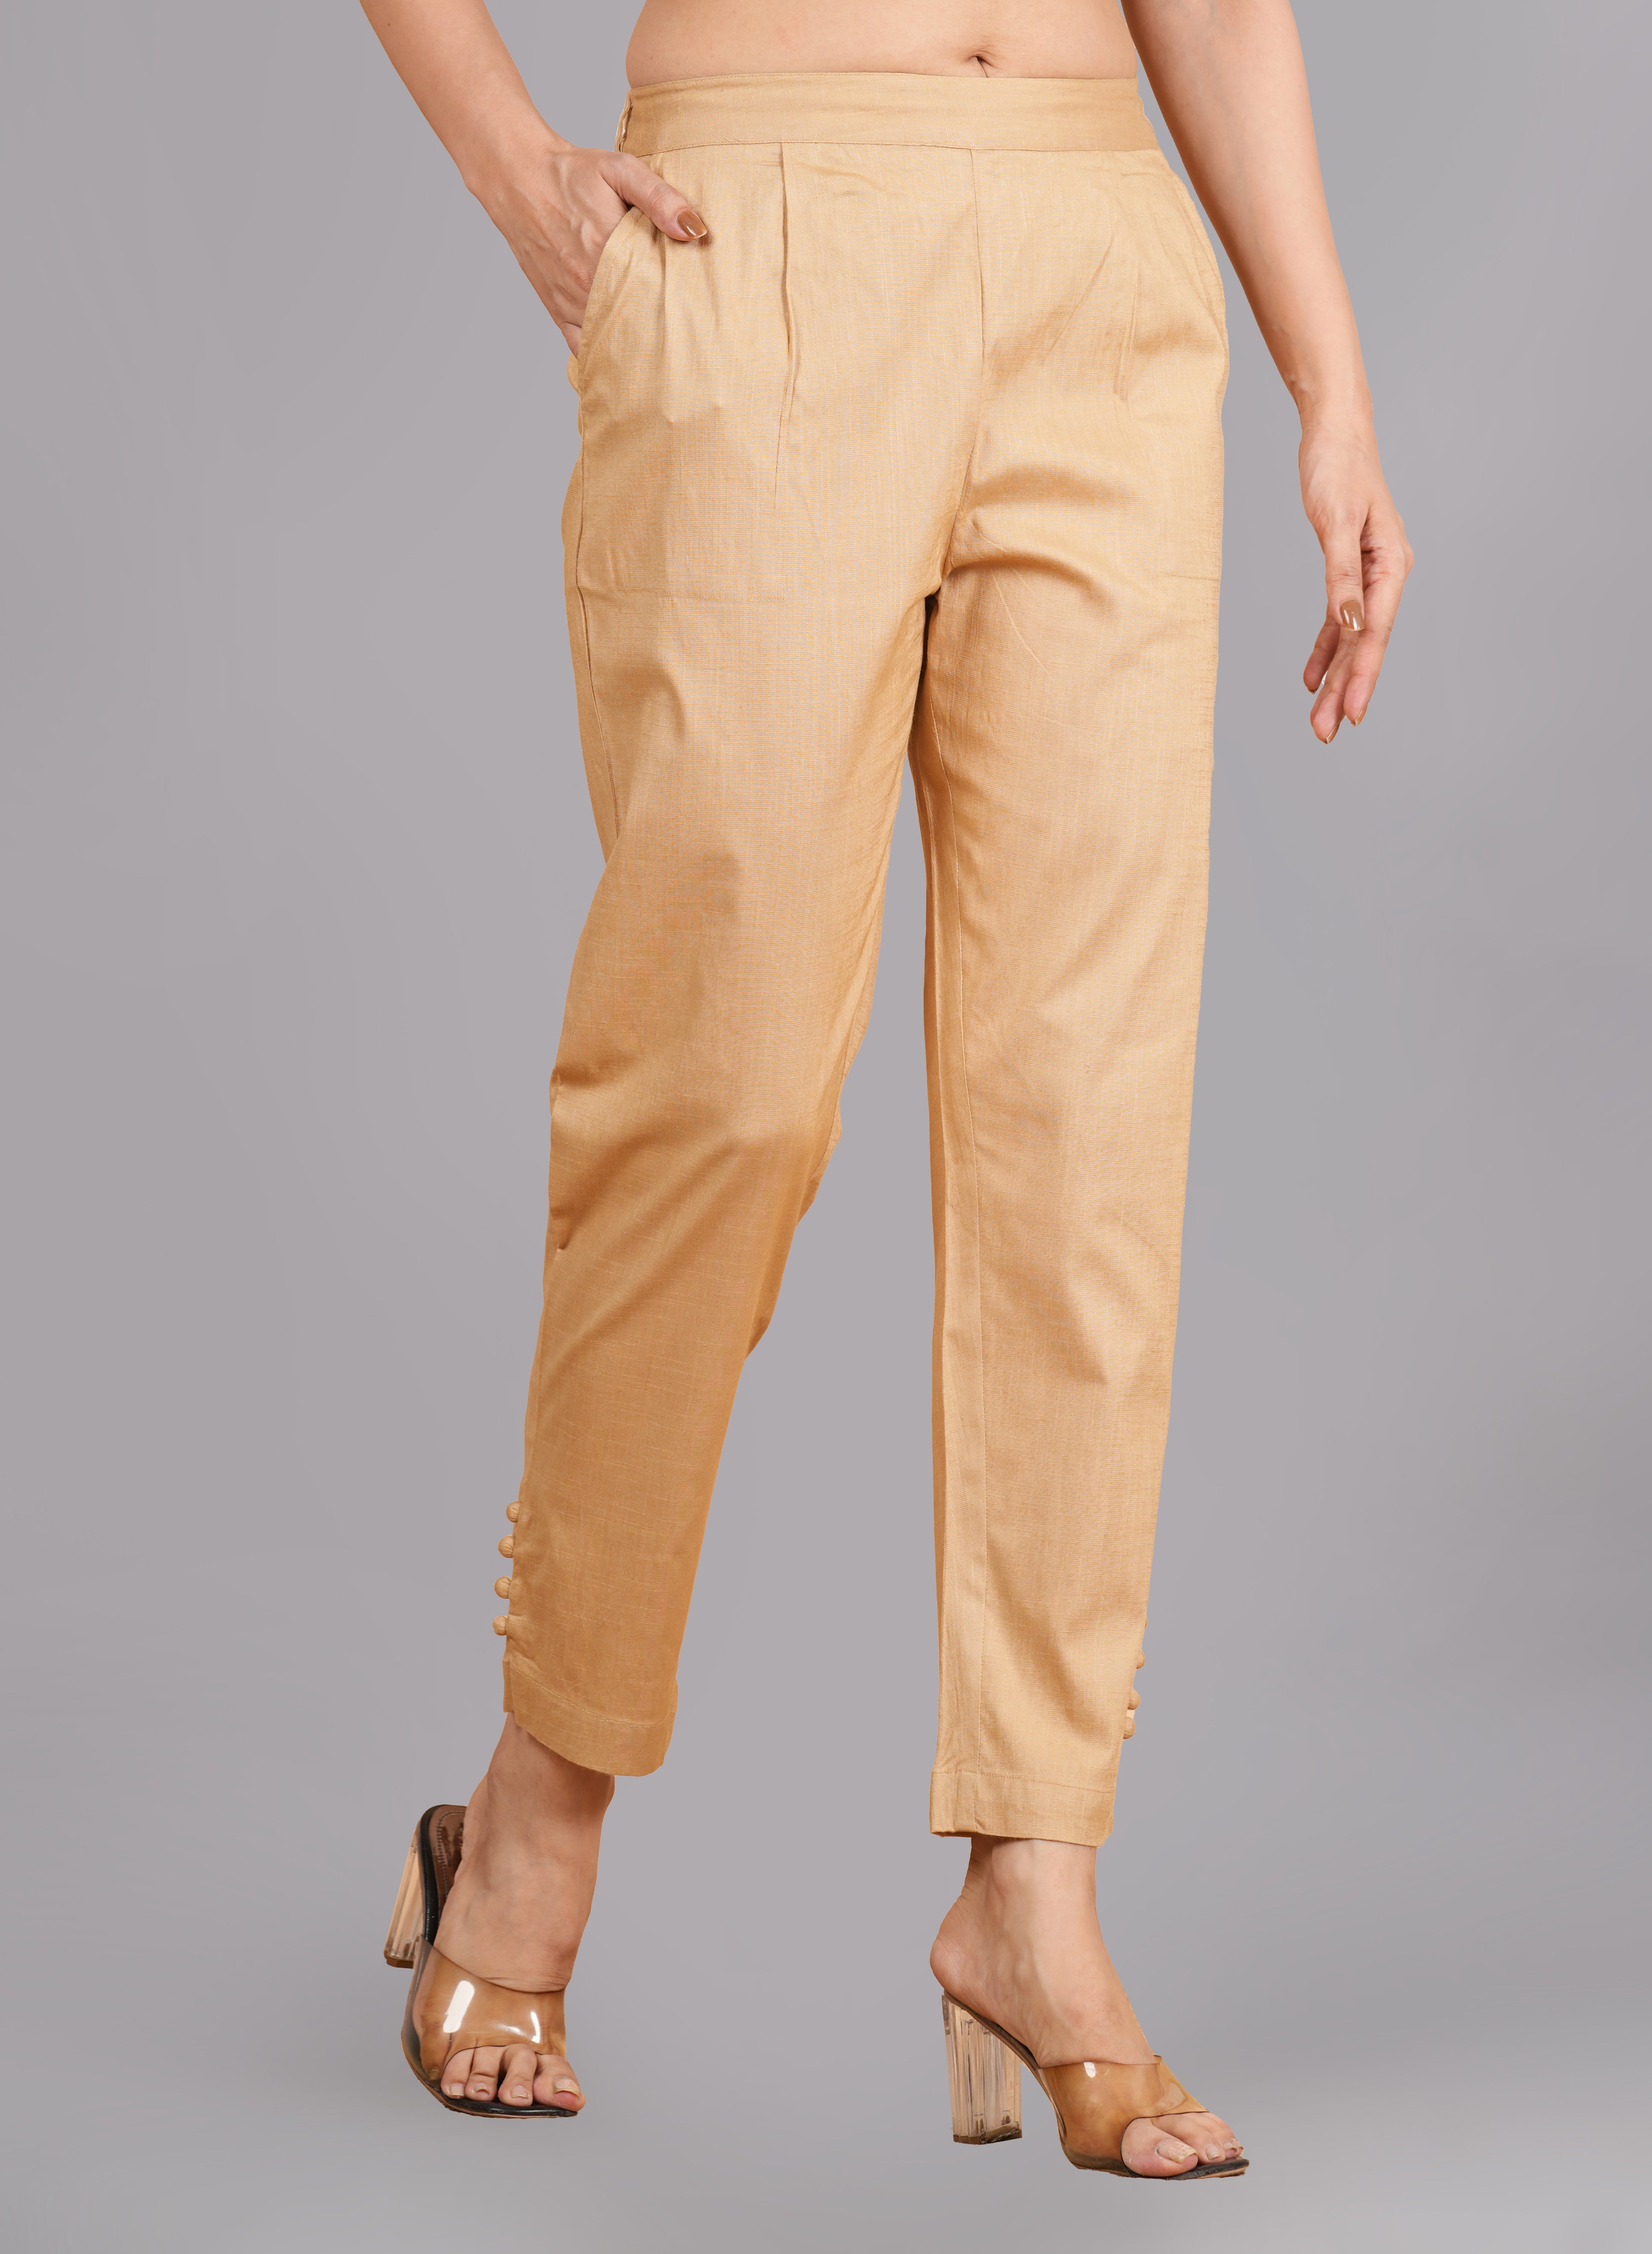 Beige cargo pants & trousers for women, Casual wear - Loose fit.